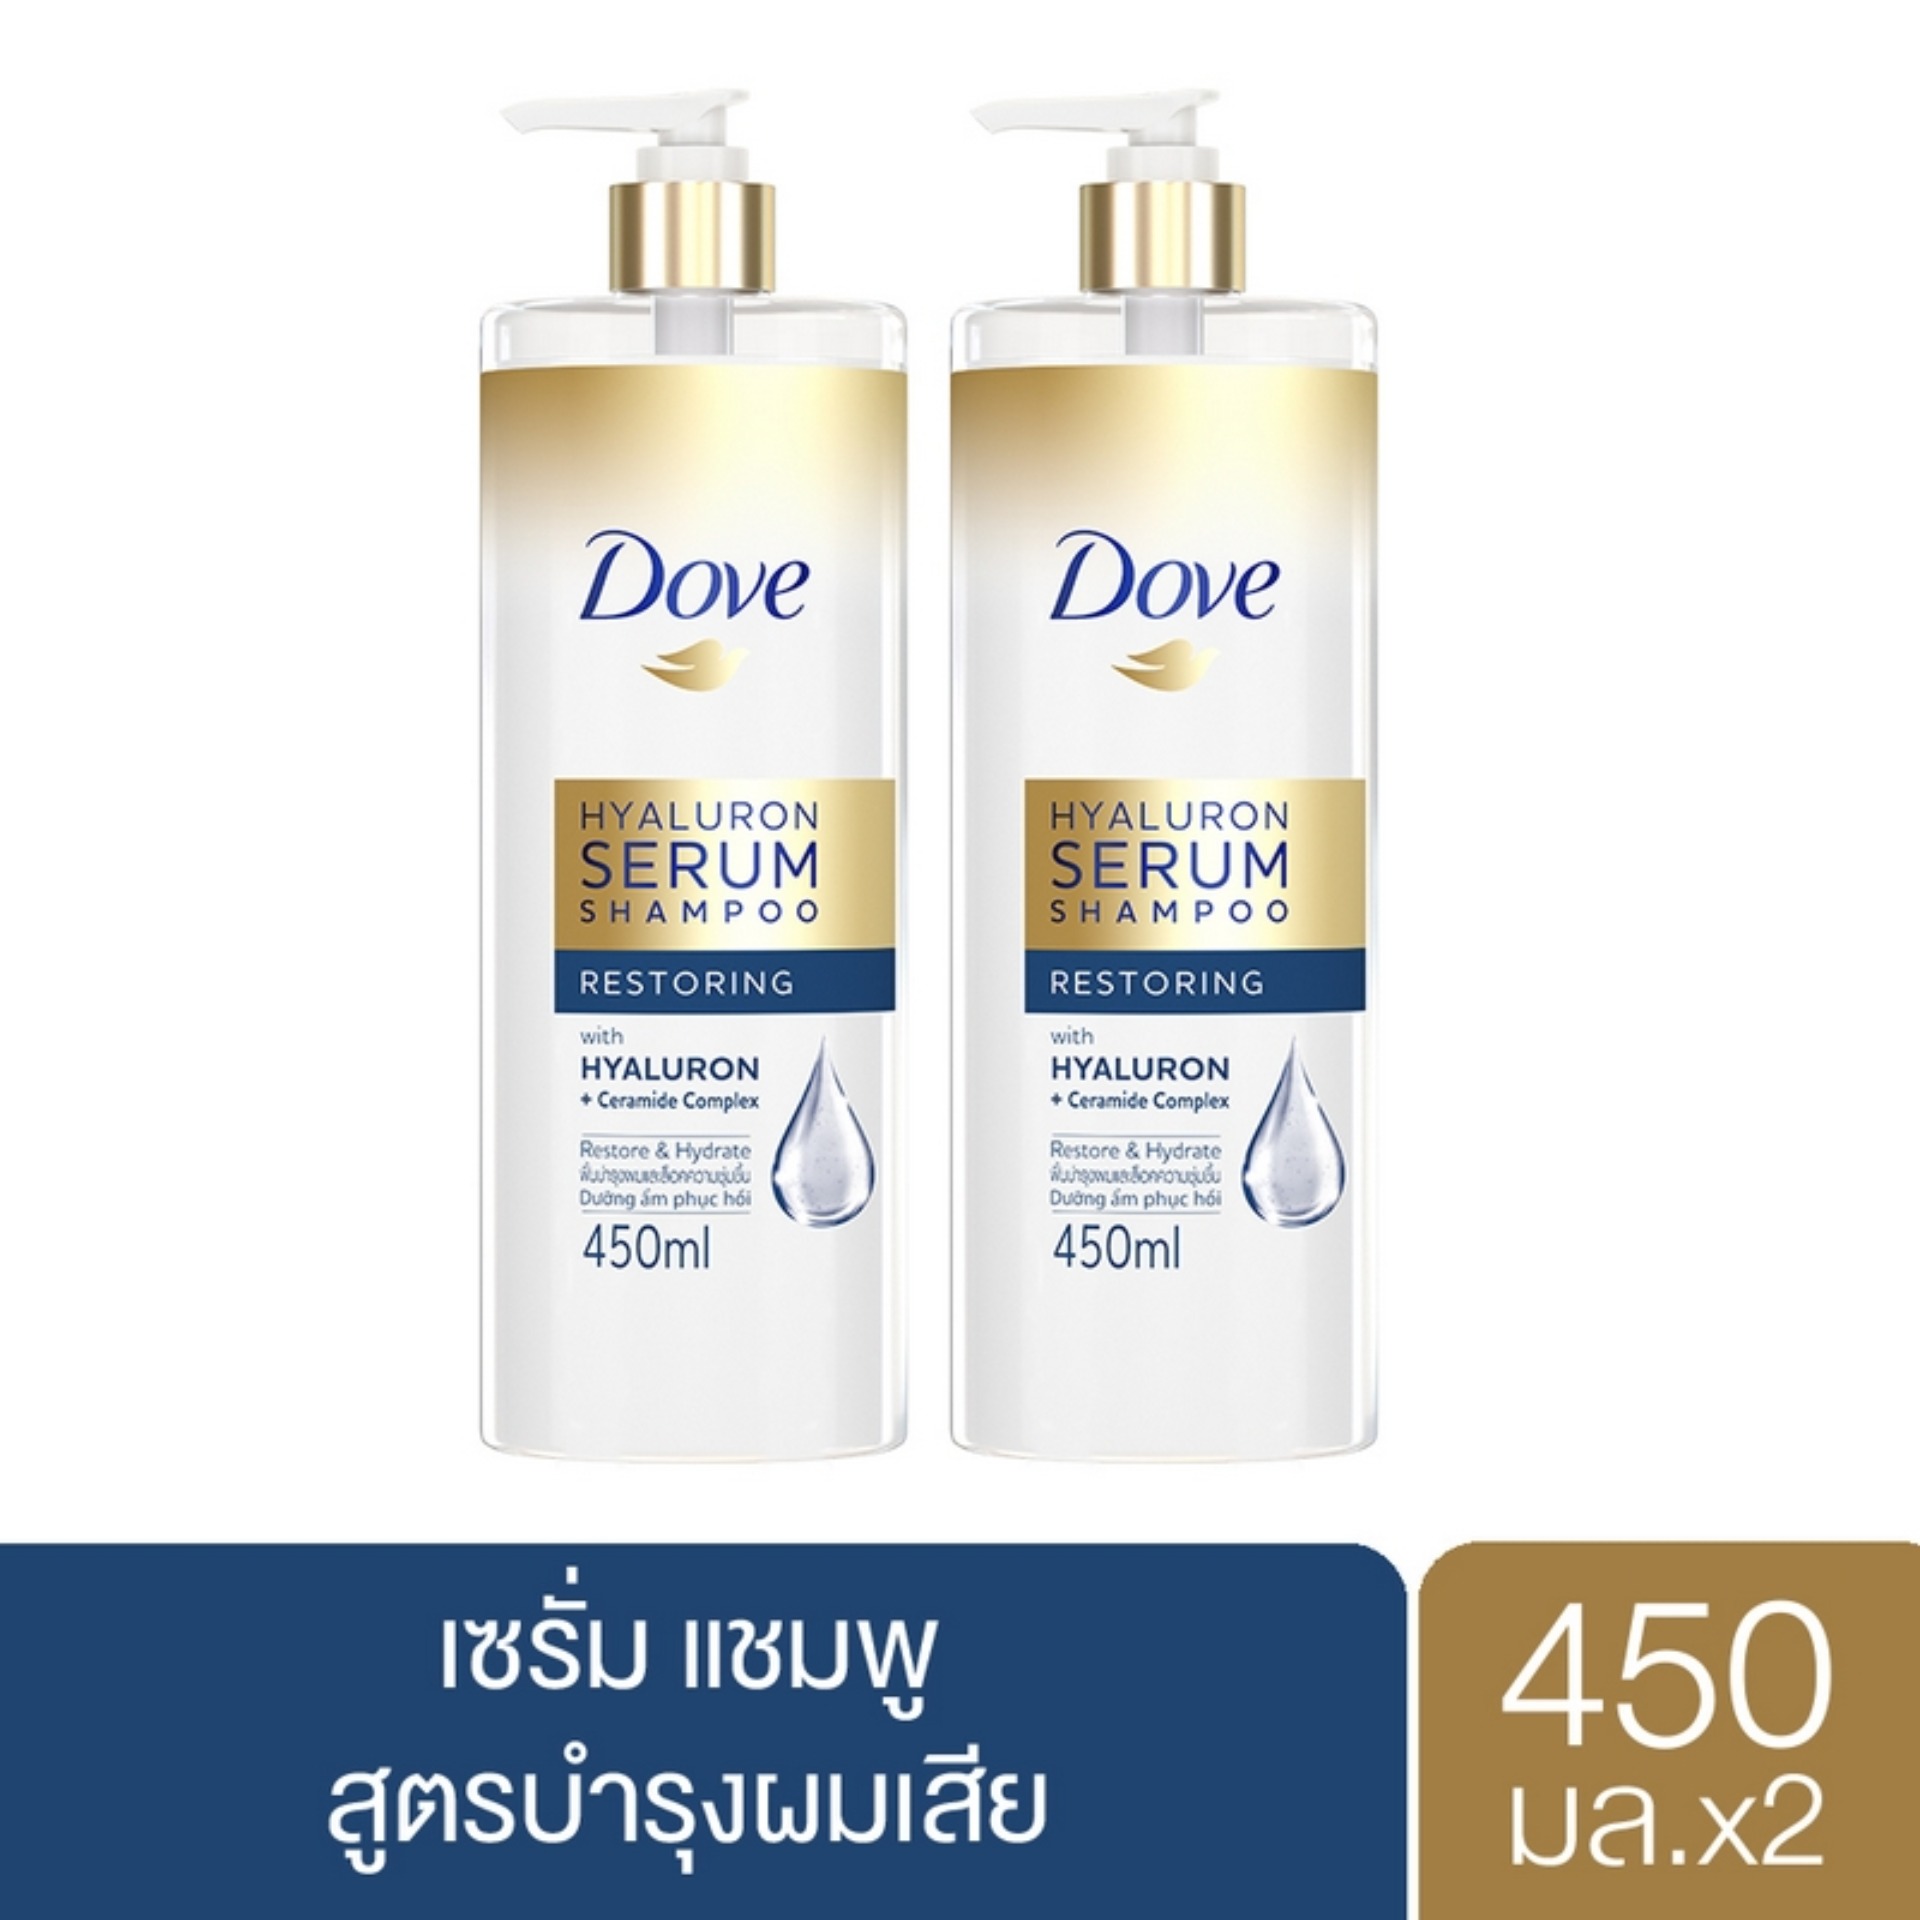 [ส่งฟรี] โดฟ ไฮยาลูรอน เซรั่ม รีสโตร์ริ่ง แชมพู สีน้ำเงิน ฟื้นบำรุงผมและล็อคความชุ่มชื้น 450 มล. x2 Dove Hyaluron Serum Shampoo Restoring 450 ml. x2( ยาสระผม ครีมสระผม แชมพู shampoo ) ของแท้